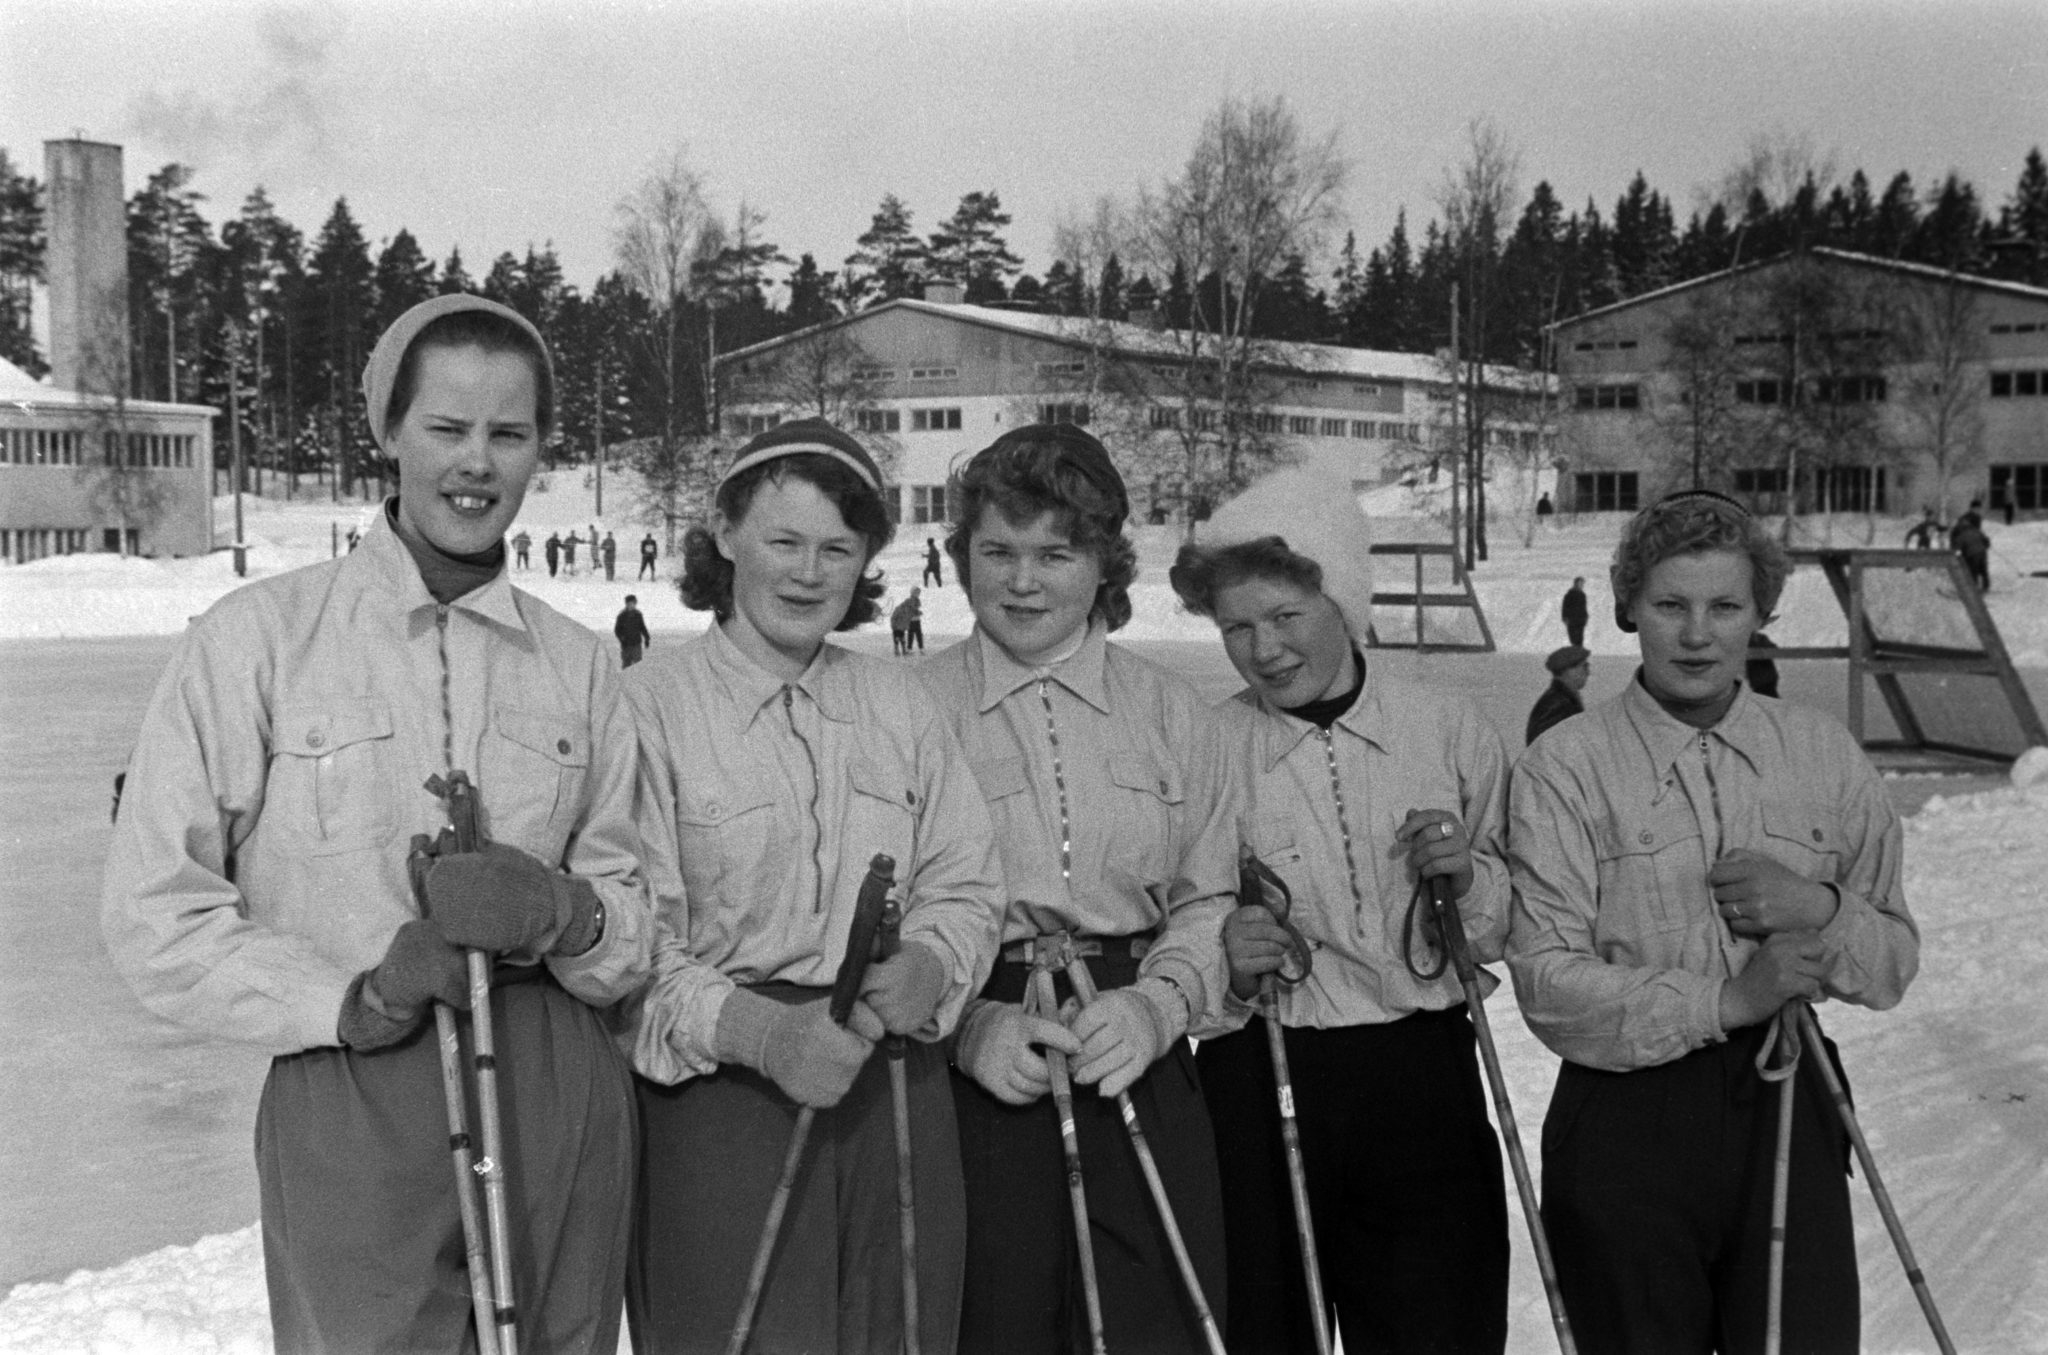 Ruskeasuon liikuntapuiston hiihtokilpailut 1950, taustalla Ruskeasuon tallit ja Ruskeasuon urheiluhalli. Kuvaaja tuntematon, Helsingin kaupunginmuseo.